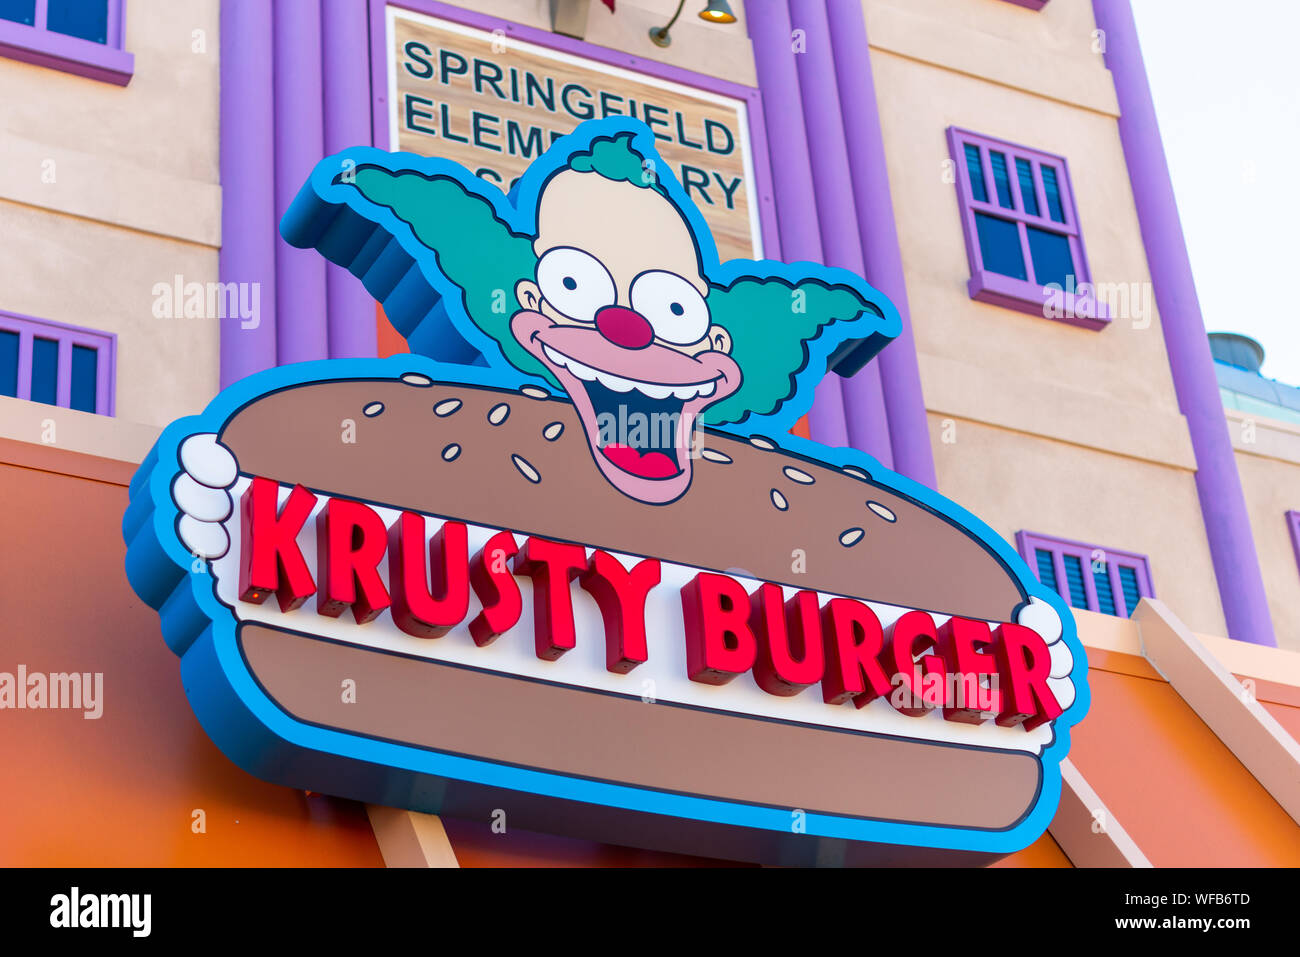 LA, USA - 2nd November 2018: Krusty Burger sign and restaurant at Universal Studios Hollywood, LA, USA Stock Photo